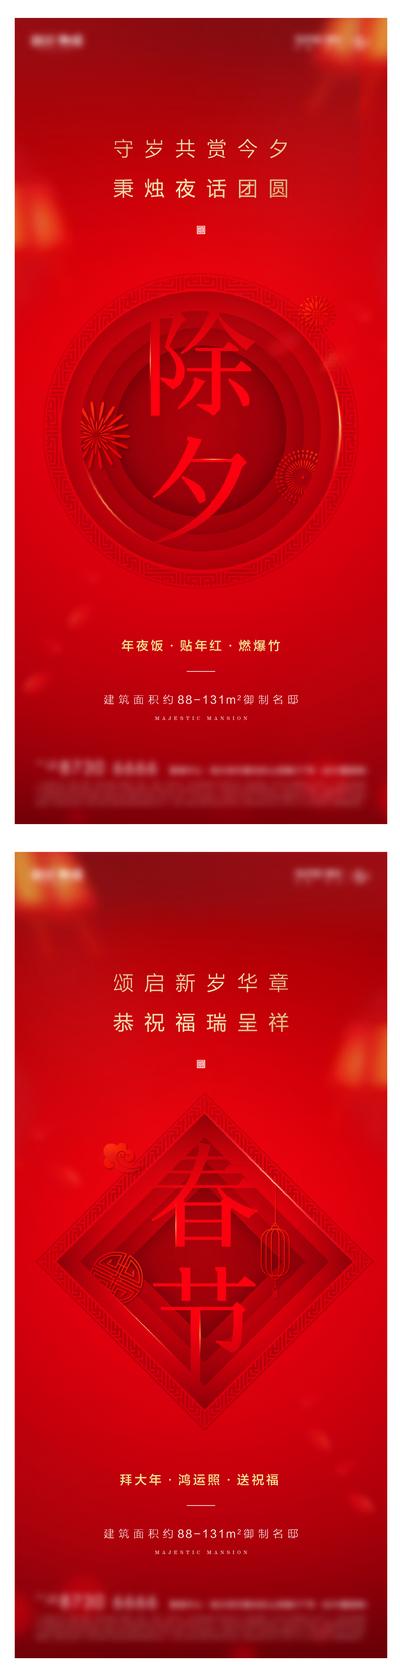 南门网 海报 房地产 新年 除夕 春节 中国传统节日 剪纸 